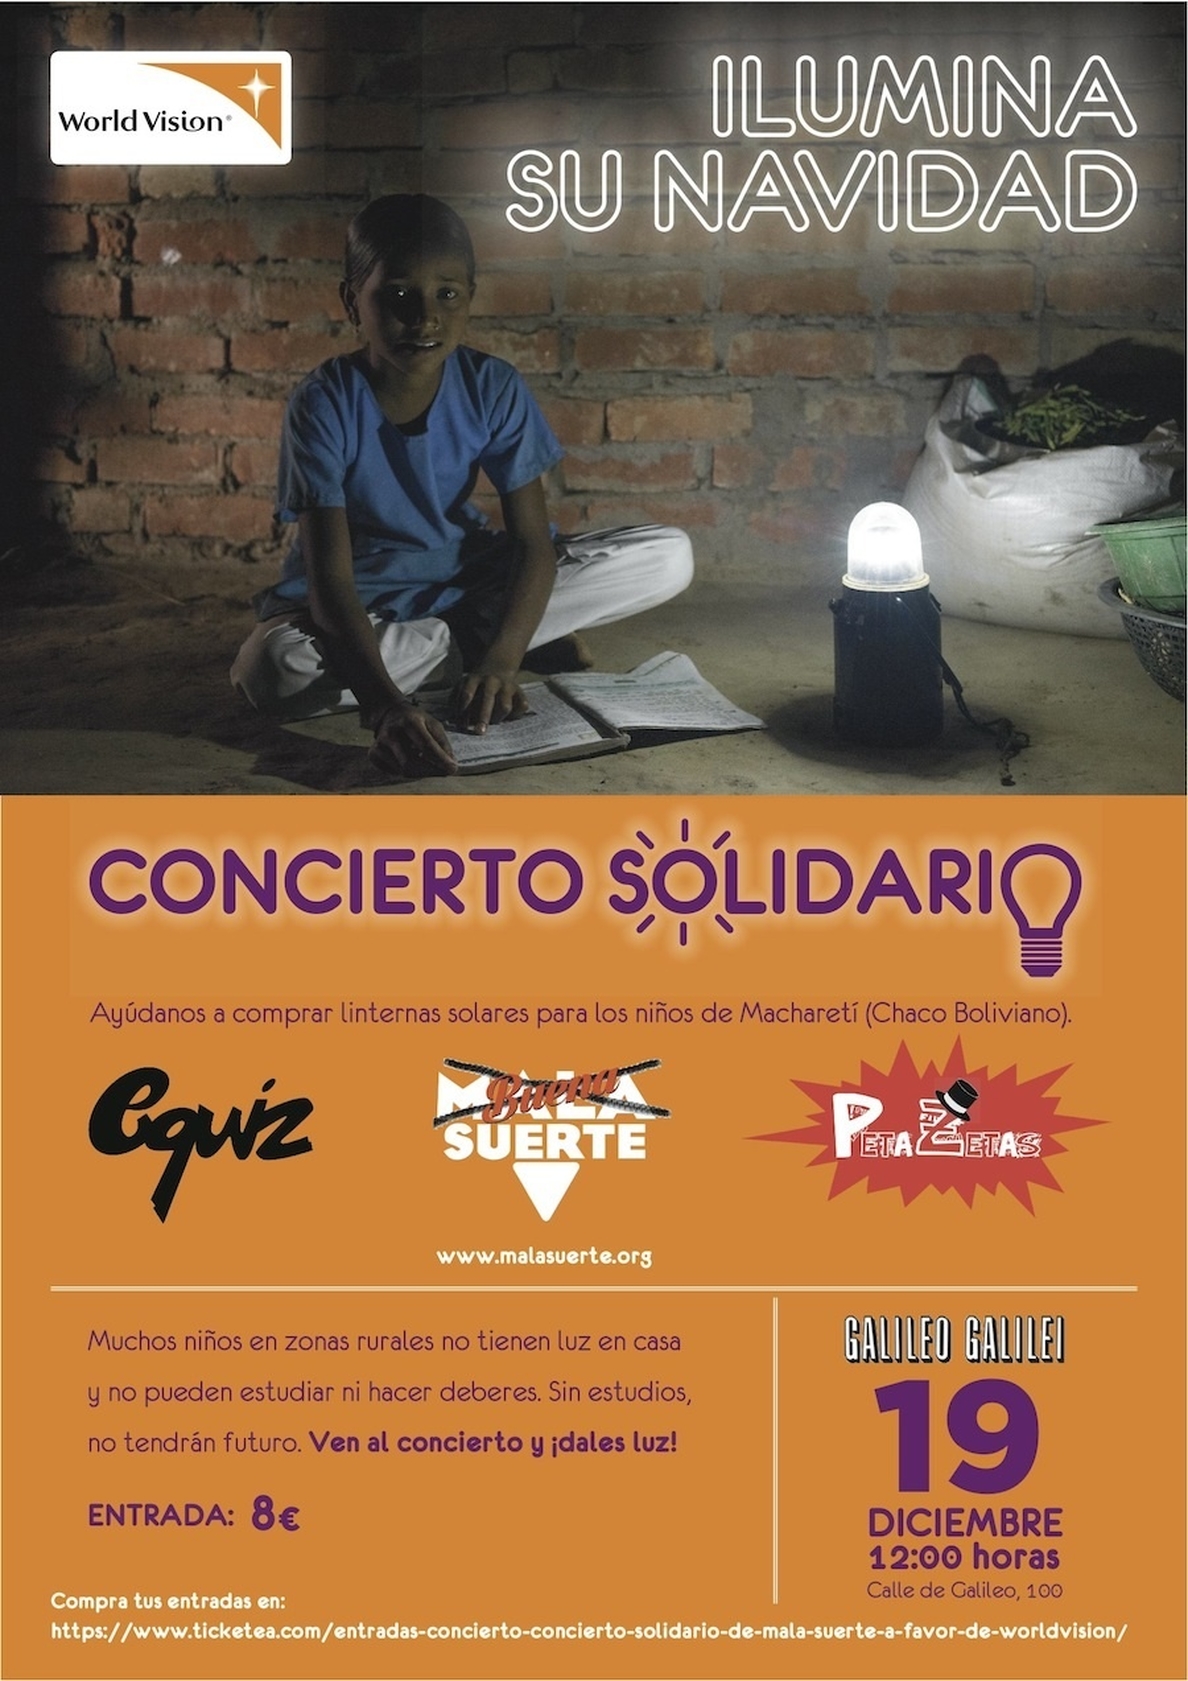 World Vision celebra un concierto solidario mañana en Madrid para ayudar a niños de zonas rurales de Bolivia